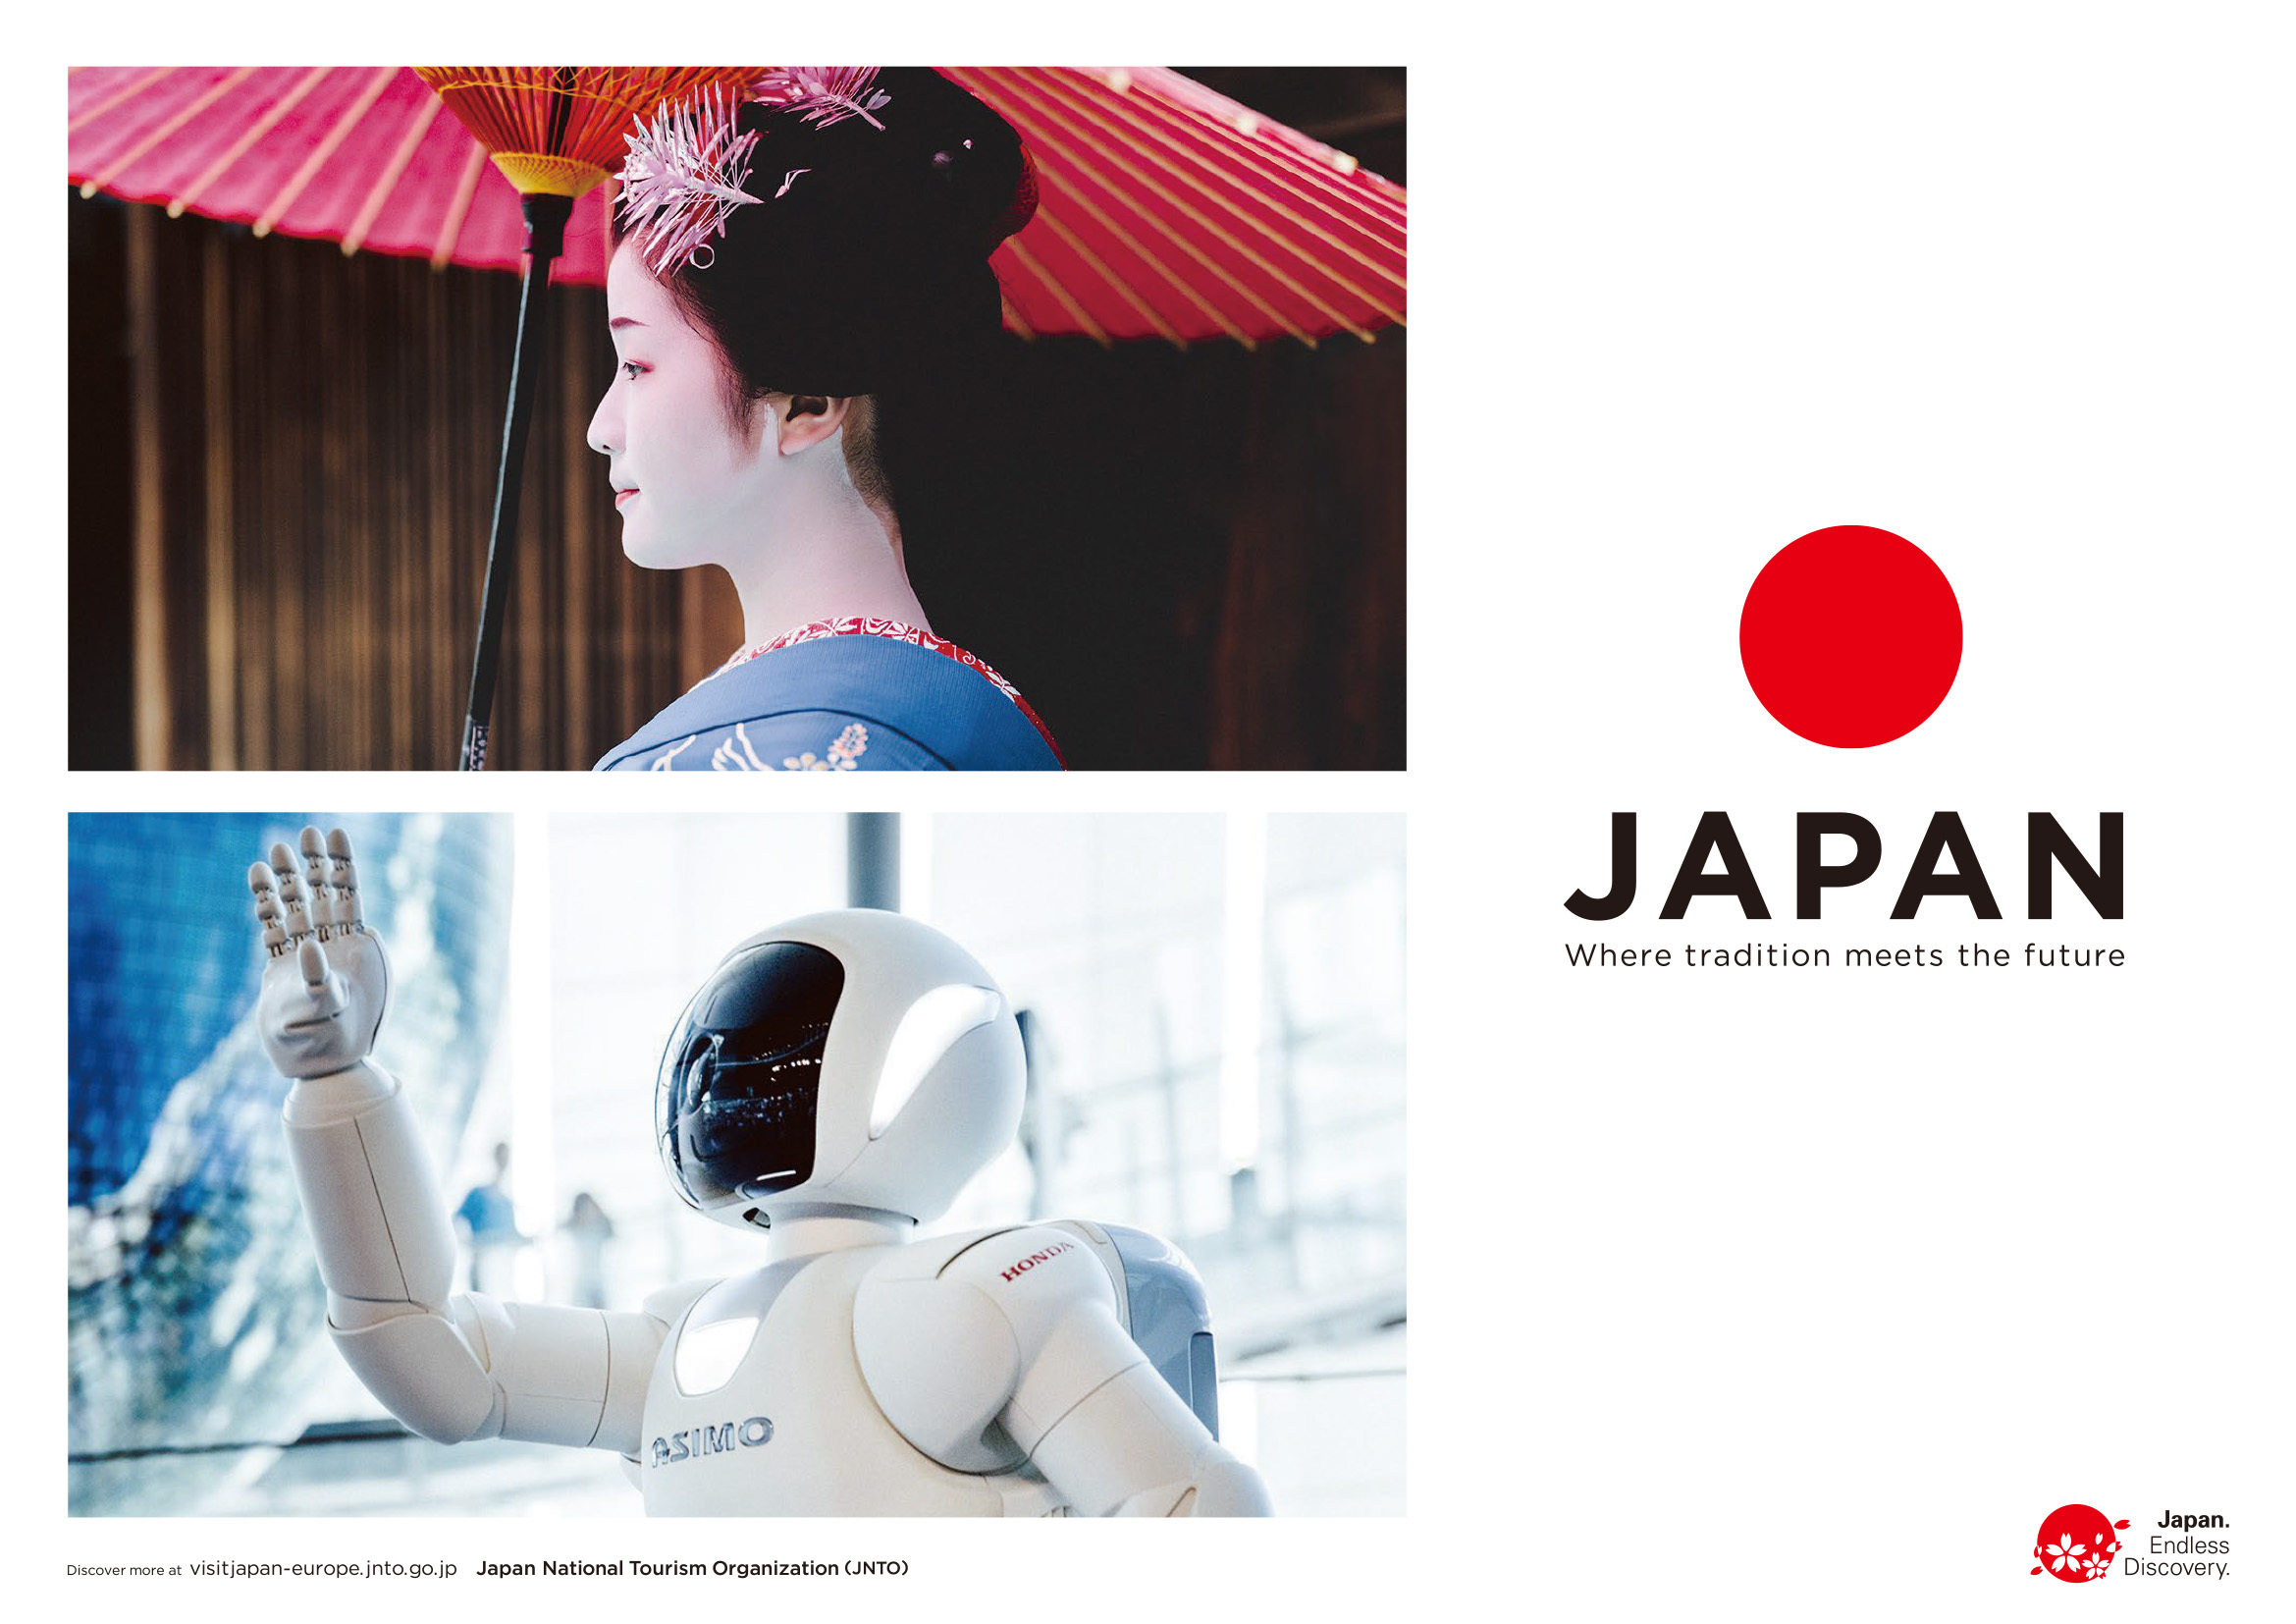 Publicité JNTO mettant en parallele une geisha et le robot Asimo